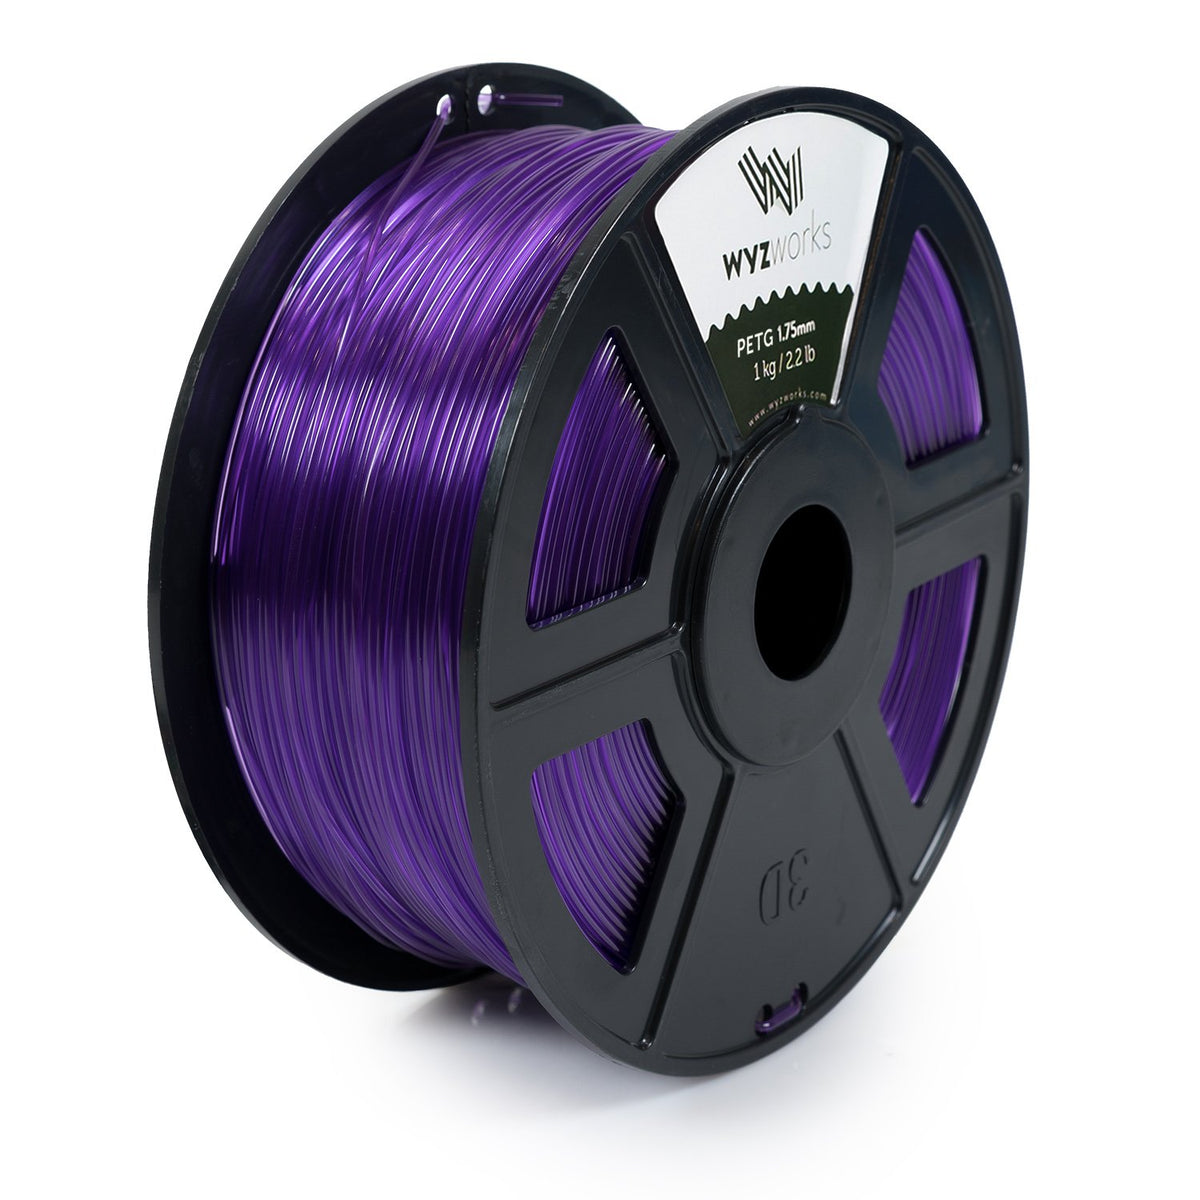 WYZworks PETG 1.75mm (Purple) Premium 3D Printer Filament - Dimensional Accuracy +/- 0.05mm 1kg / 2.2lb + [ Multiple Color Options Available ]